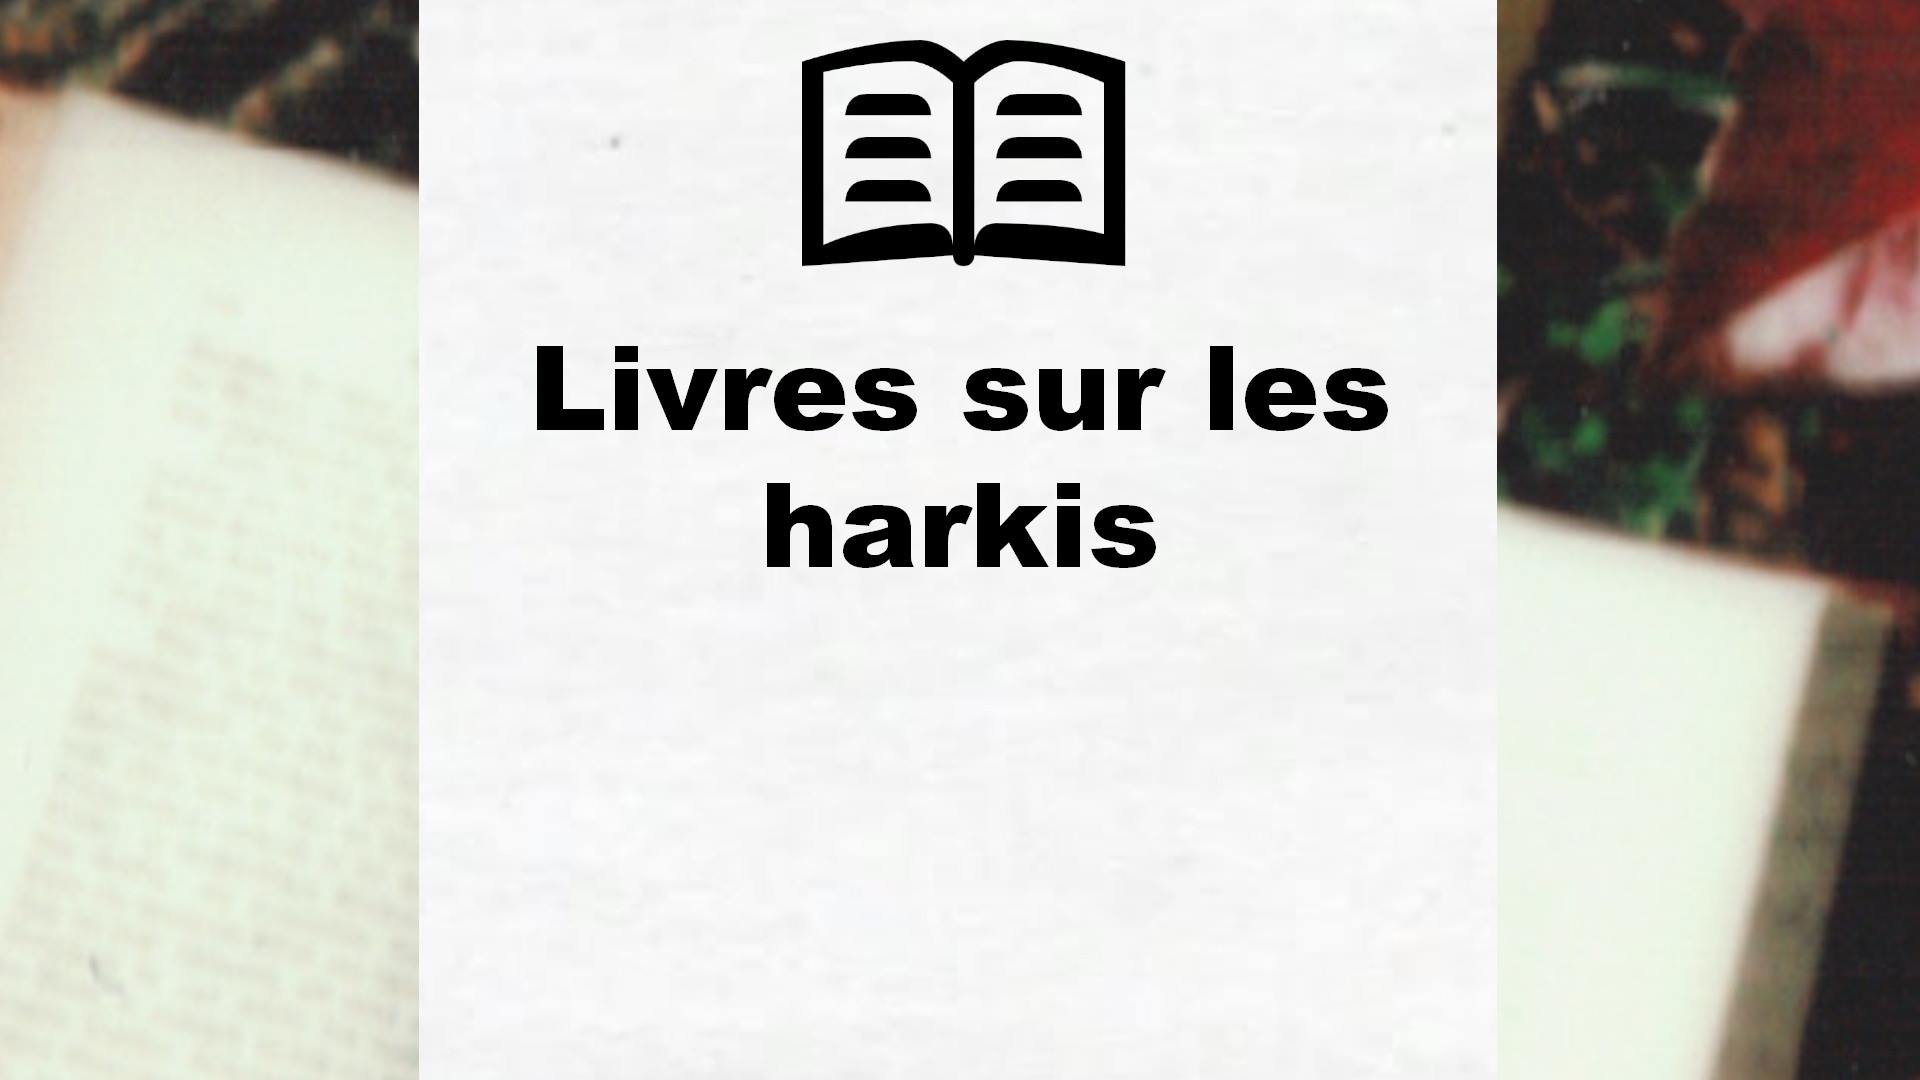 Livres sur les harkis